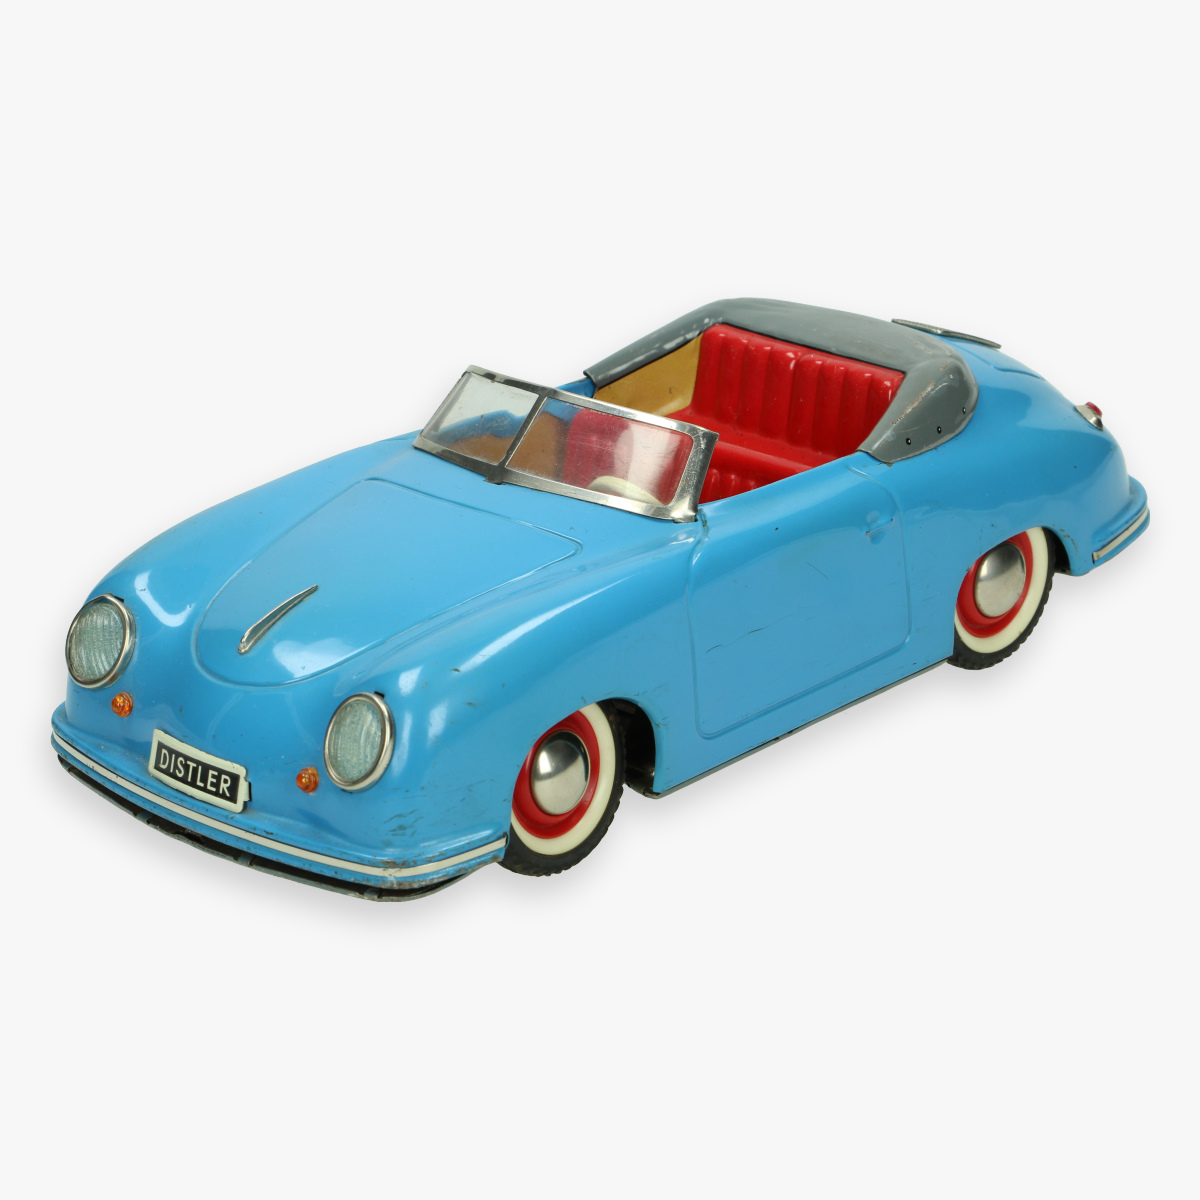 Afbeeldingen van tin toy distler porche 356 blauw jaren 50 electro matic 7500